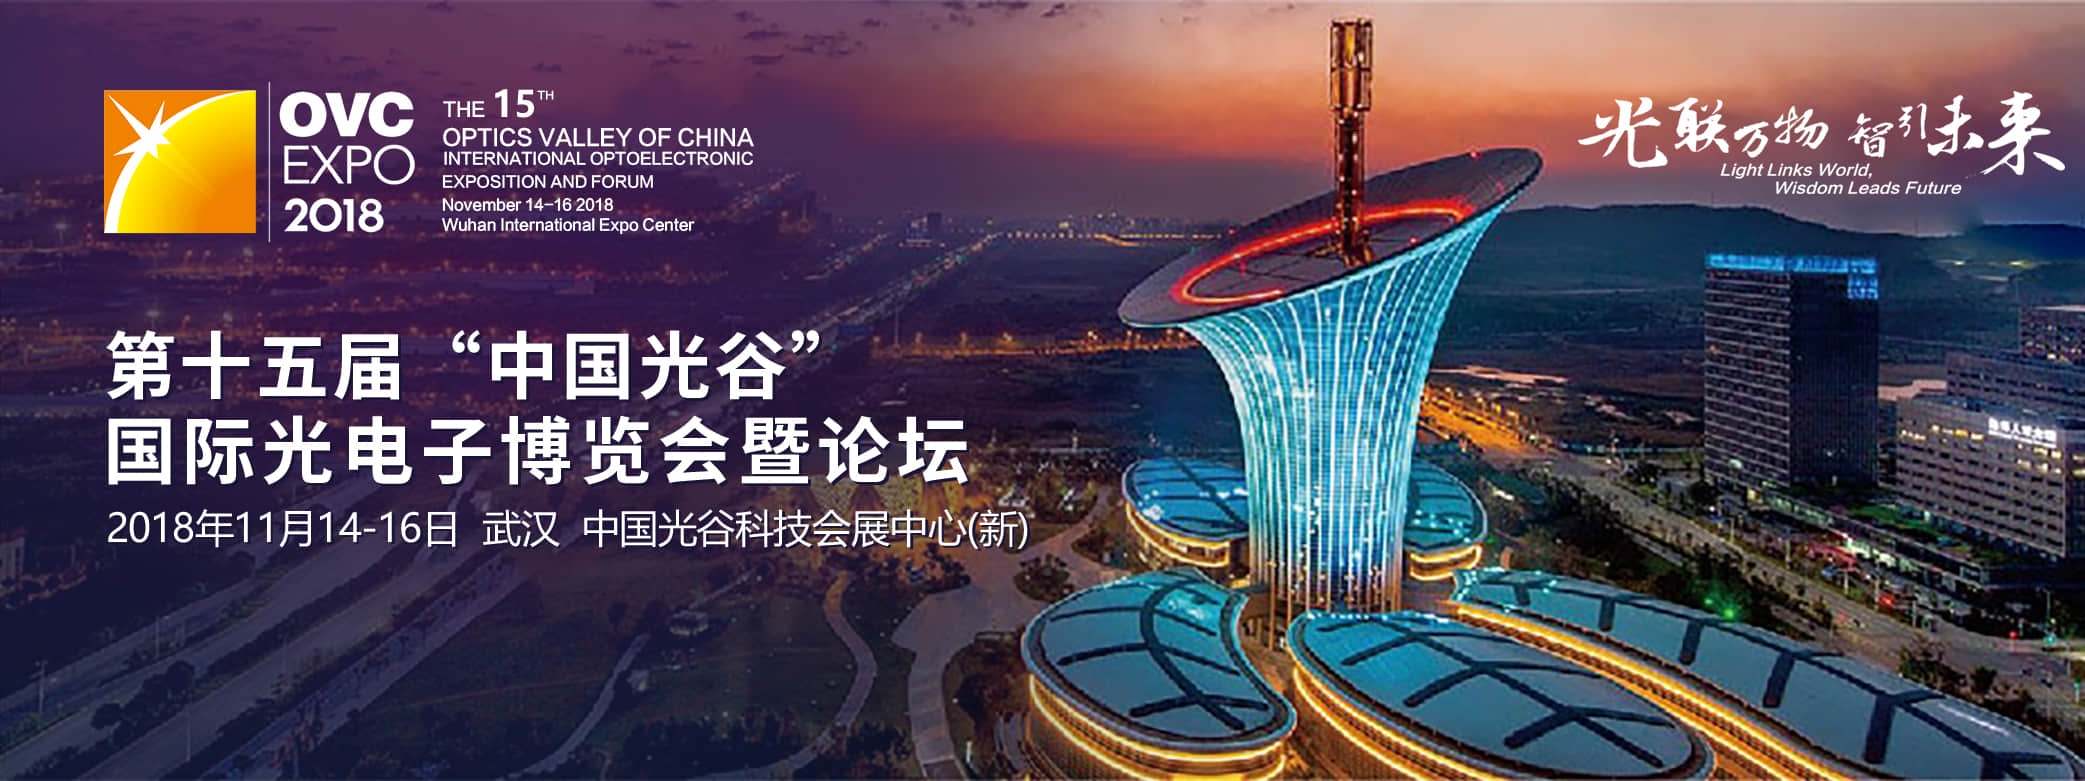 2018第15届“中国光谷”国际光电子博览会暨论坛